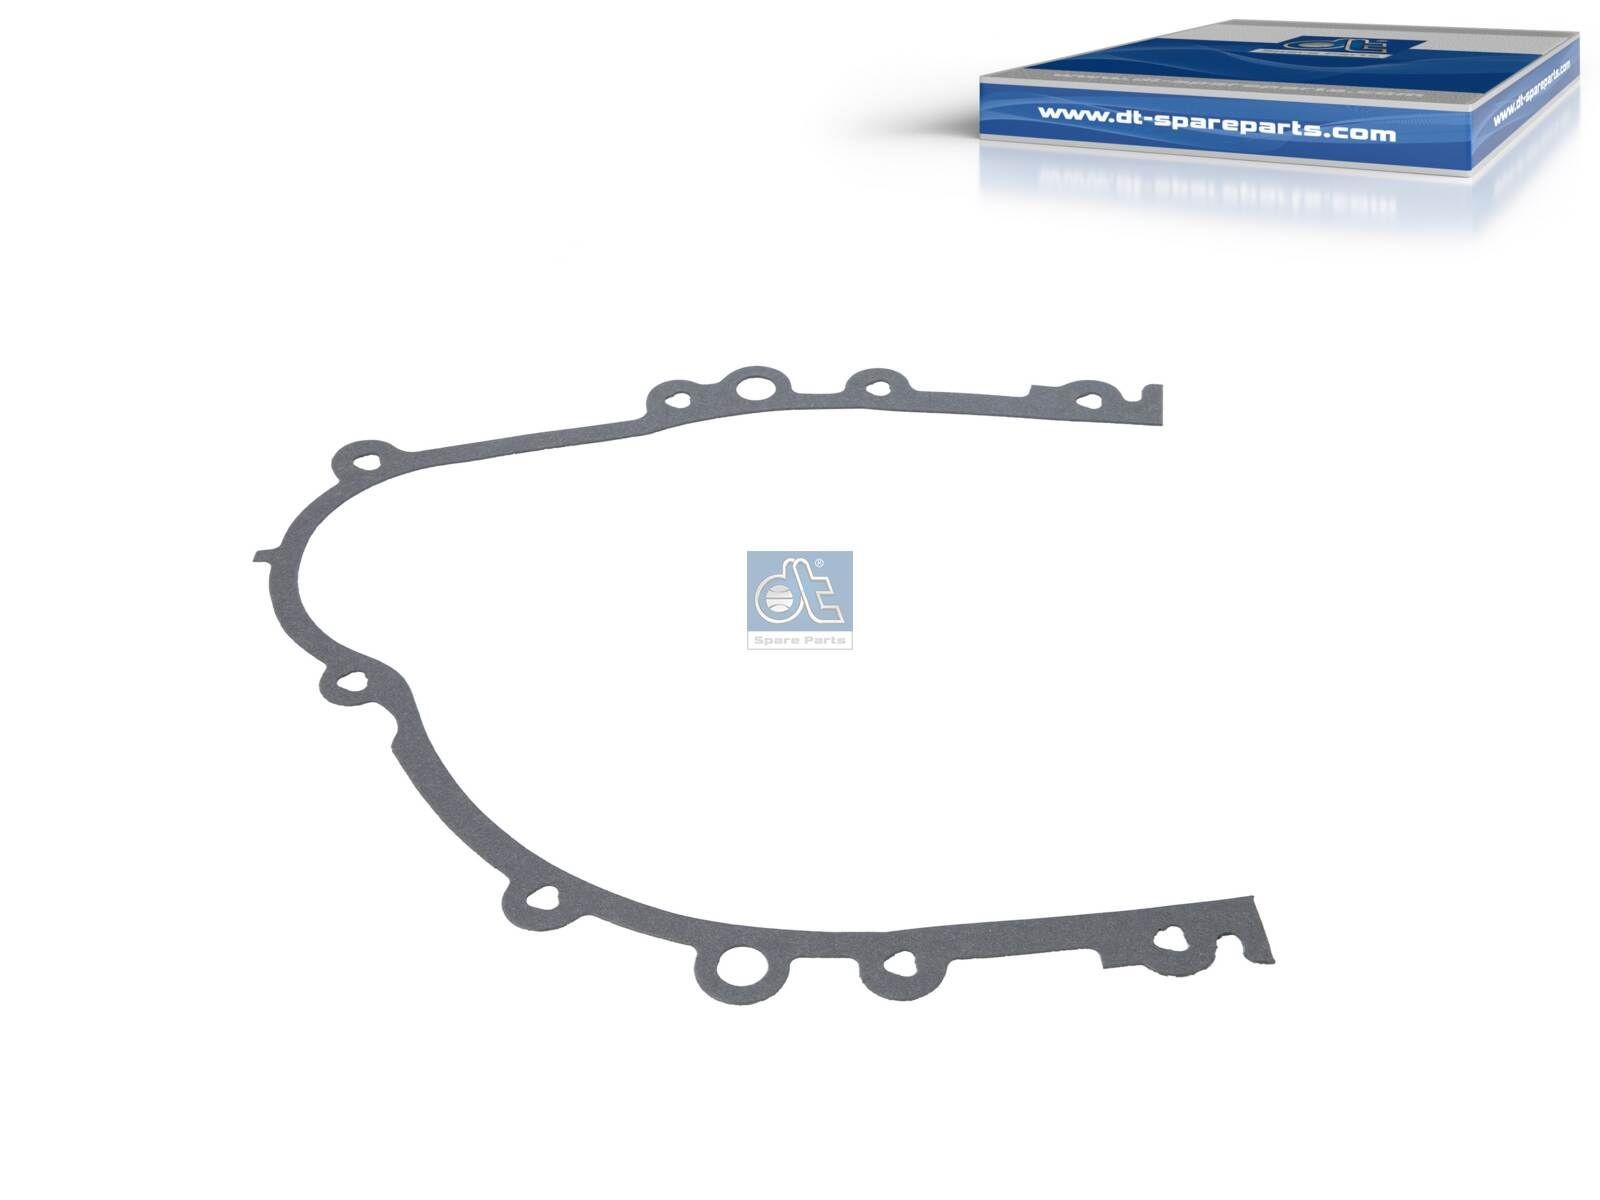 Peugeot BIPPER Timing belt cover gasket 8200166 DT Spare Parts 1.24141 online buy